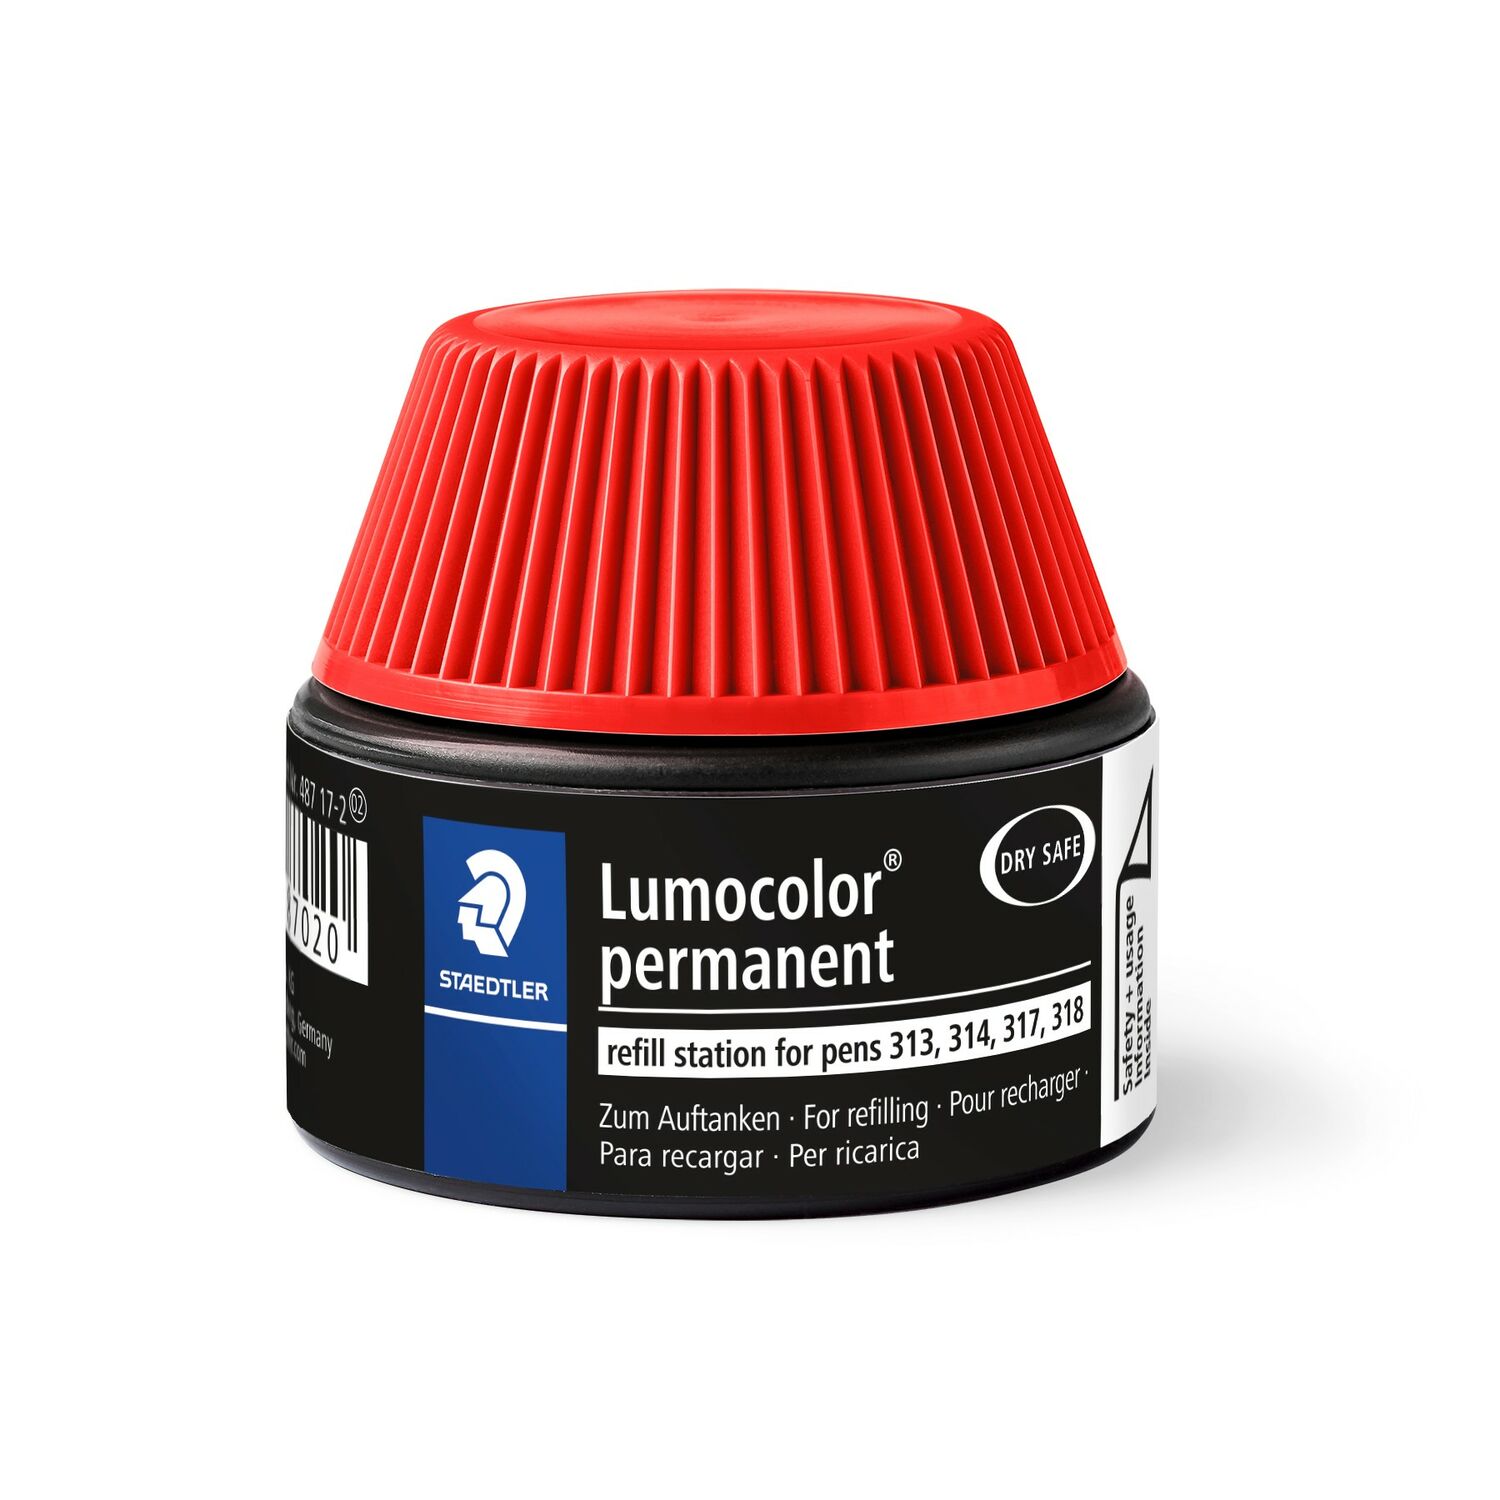 Lumocolor® permanent refill station 487 17 - Estación de recarga para los bolígrafos universales permanentes Lumocolor